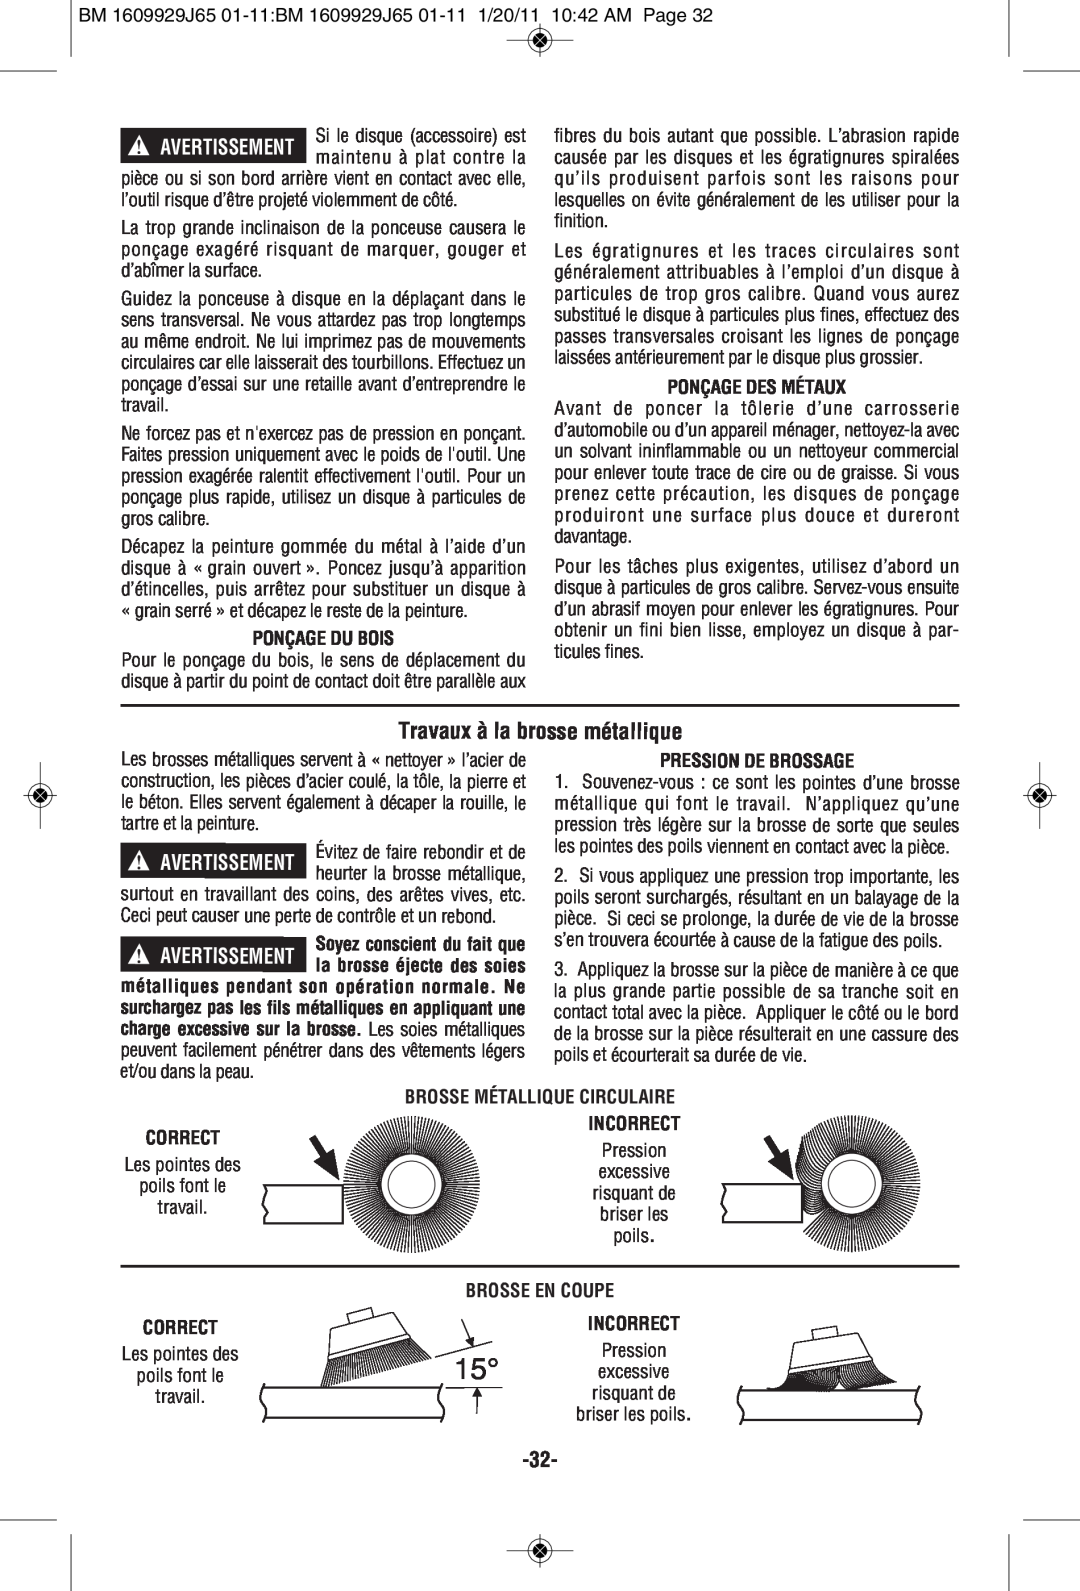 Bosch Power Tools 1812PSD manual Travaux à la brosse métallique, Ponçage Du Bois, Ponçage Des Métaux, Pression De Brossage 